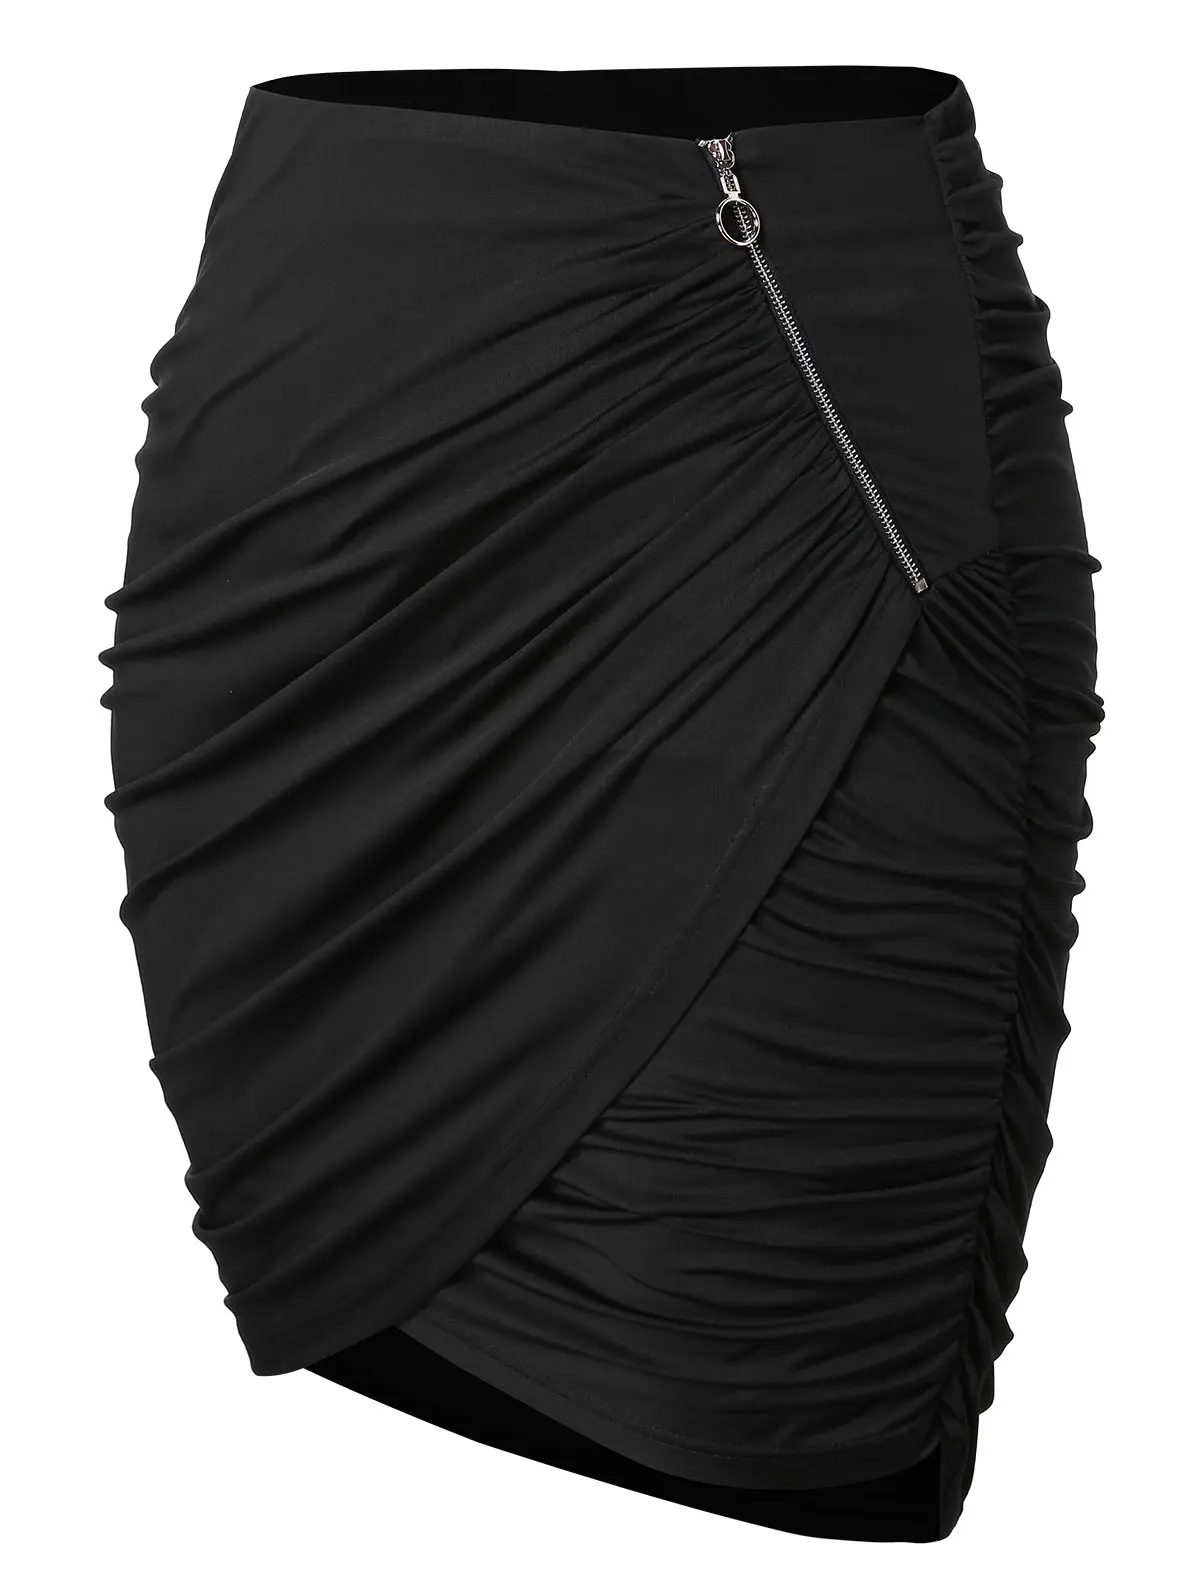 Wipalo размера плюс на молнии Асимметричная юбка с рюшами Женская юбка Мини Повседневная офисная юбка Faldas Mujer Moda Весна Лето 5XL